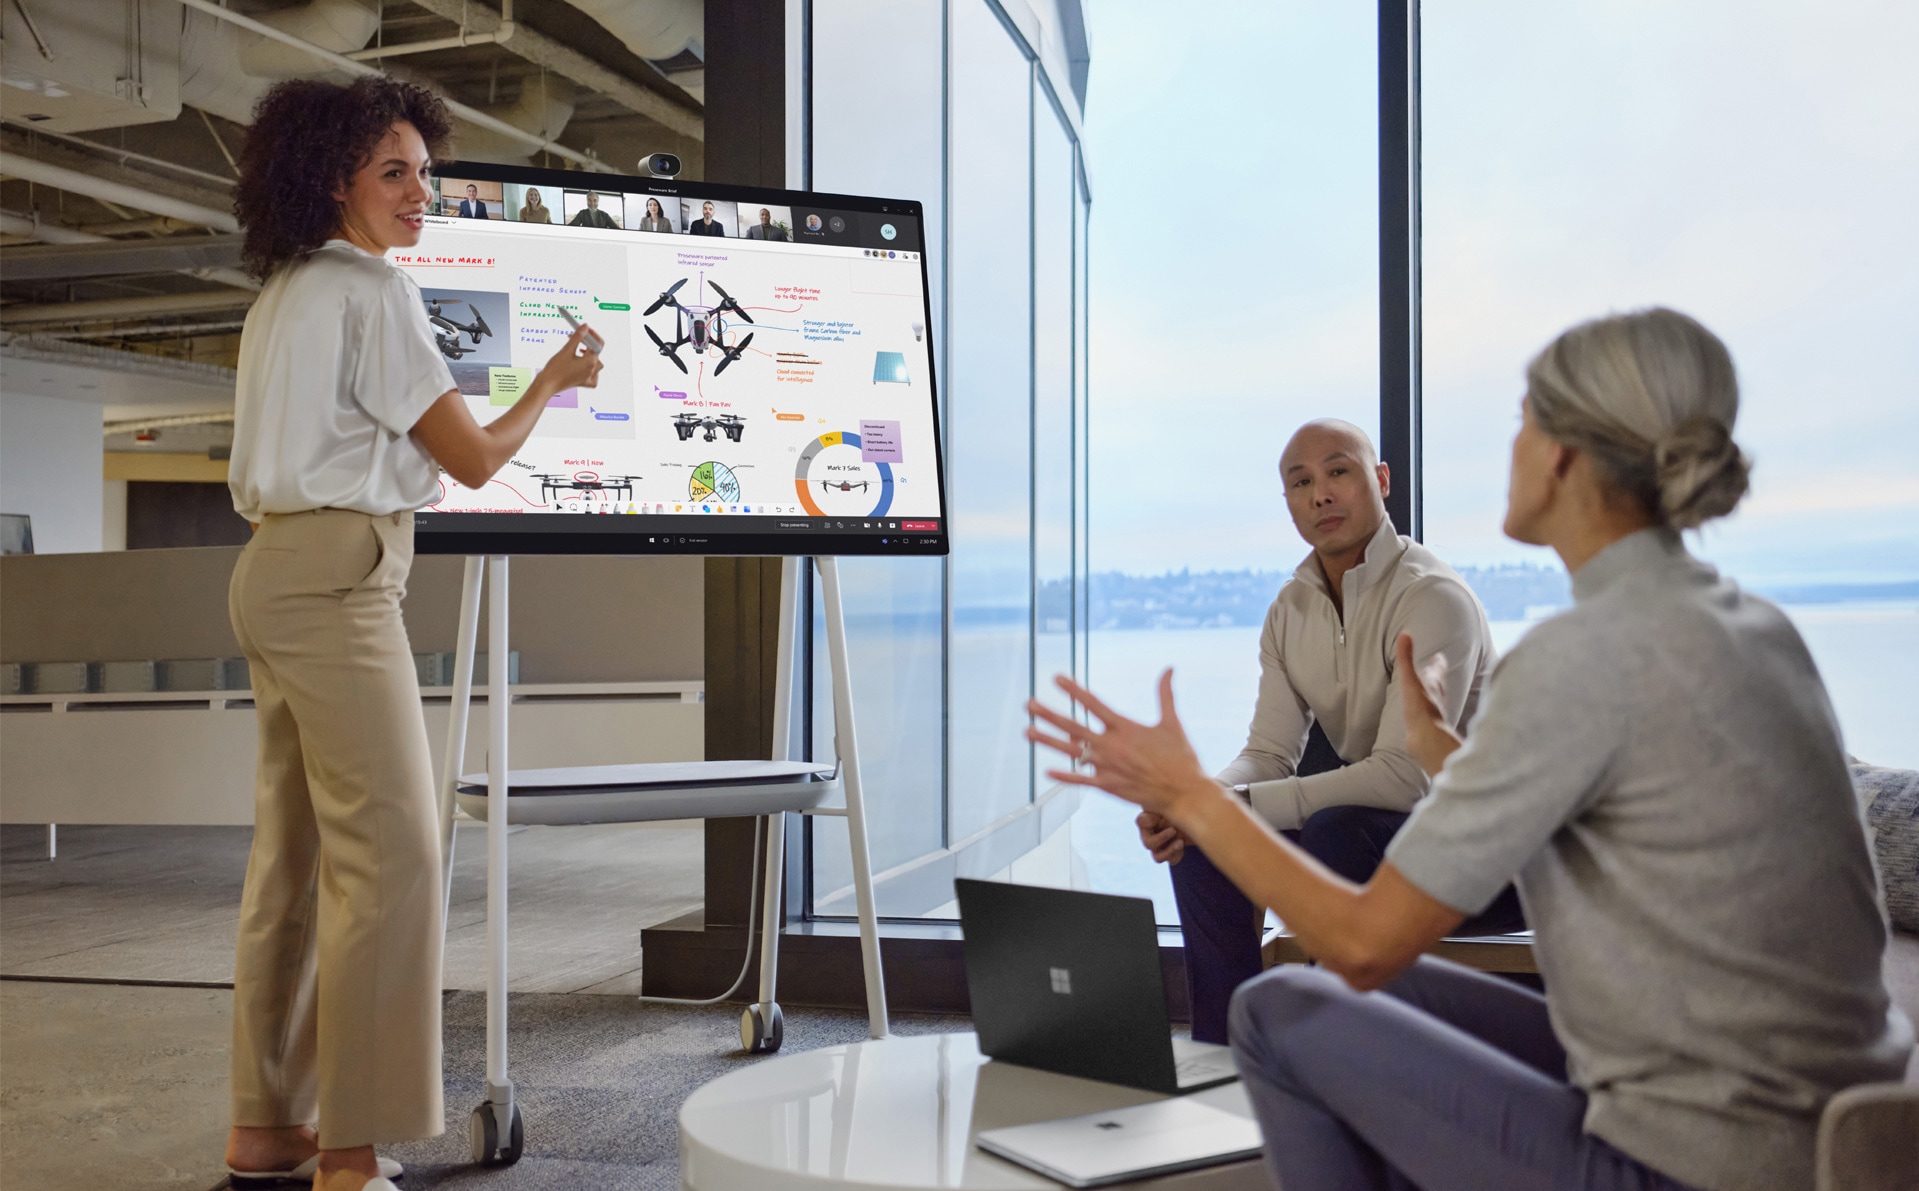 Mitarbeitende vor Ort interagieren mit einer PowerPoint-Präsentation in Teams, während entfernte Mitarbeitende die Präsentation verfolgen